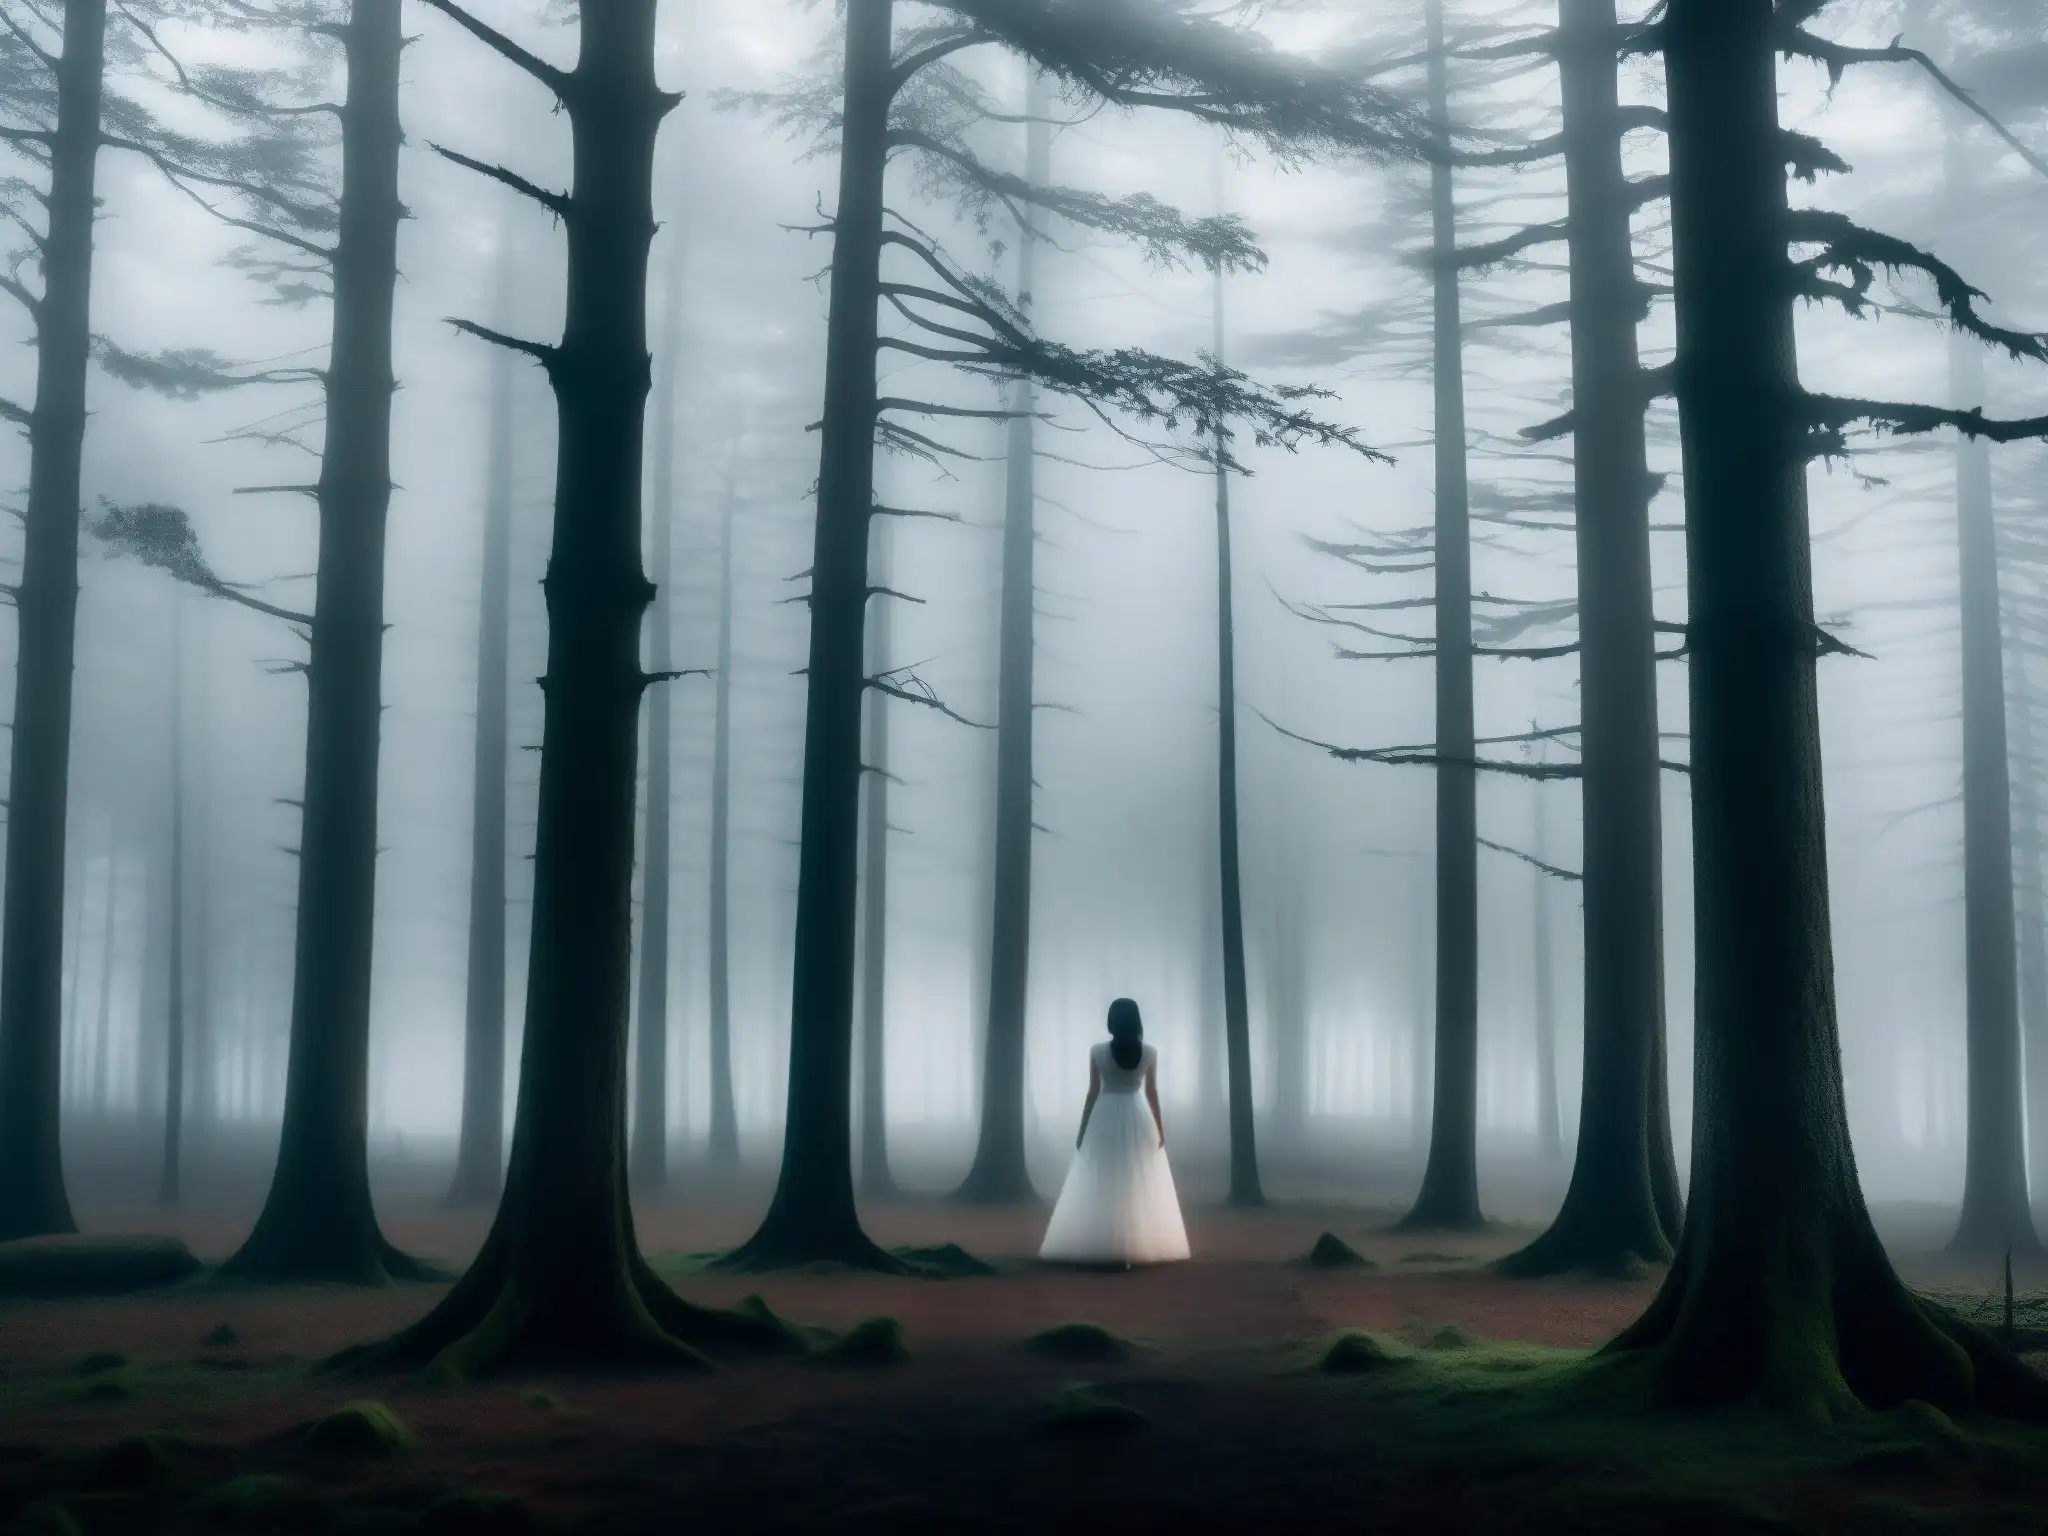 Silueta de mujer en vestido blanco entre árboles en la neblina, evocando el misterio de la Dama de Blanco mito urbano